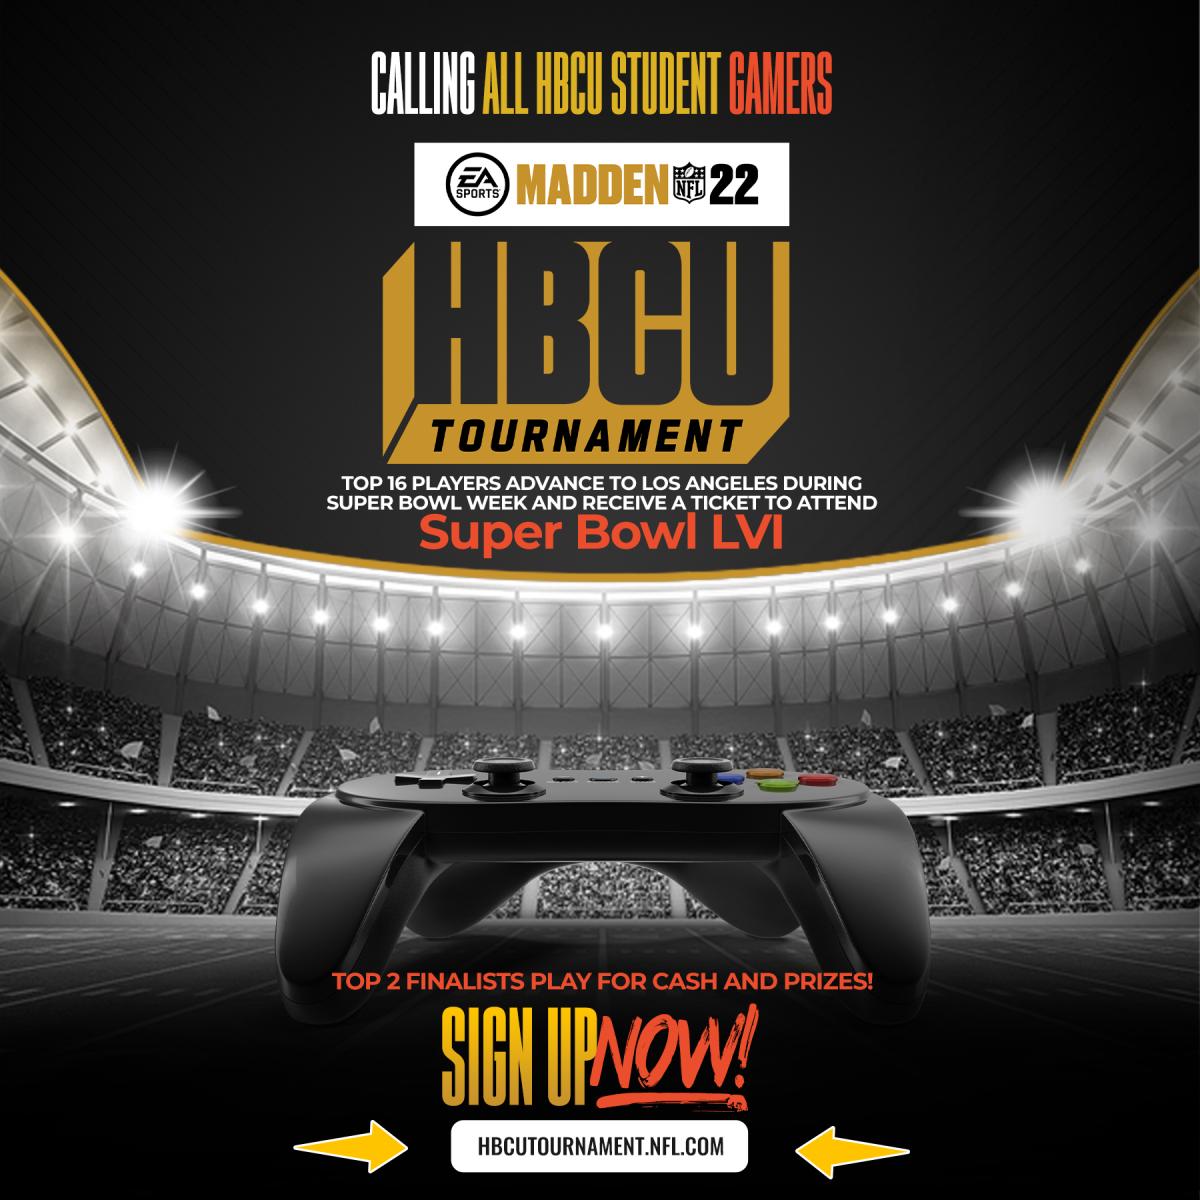 HBCU ESports News: 2nd Annual Madden NFL 22 x HBCU Tournament - HBCU Legends